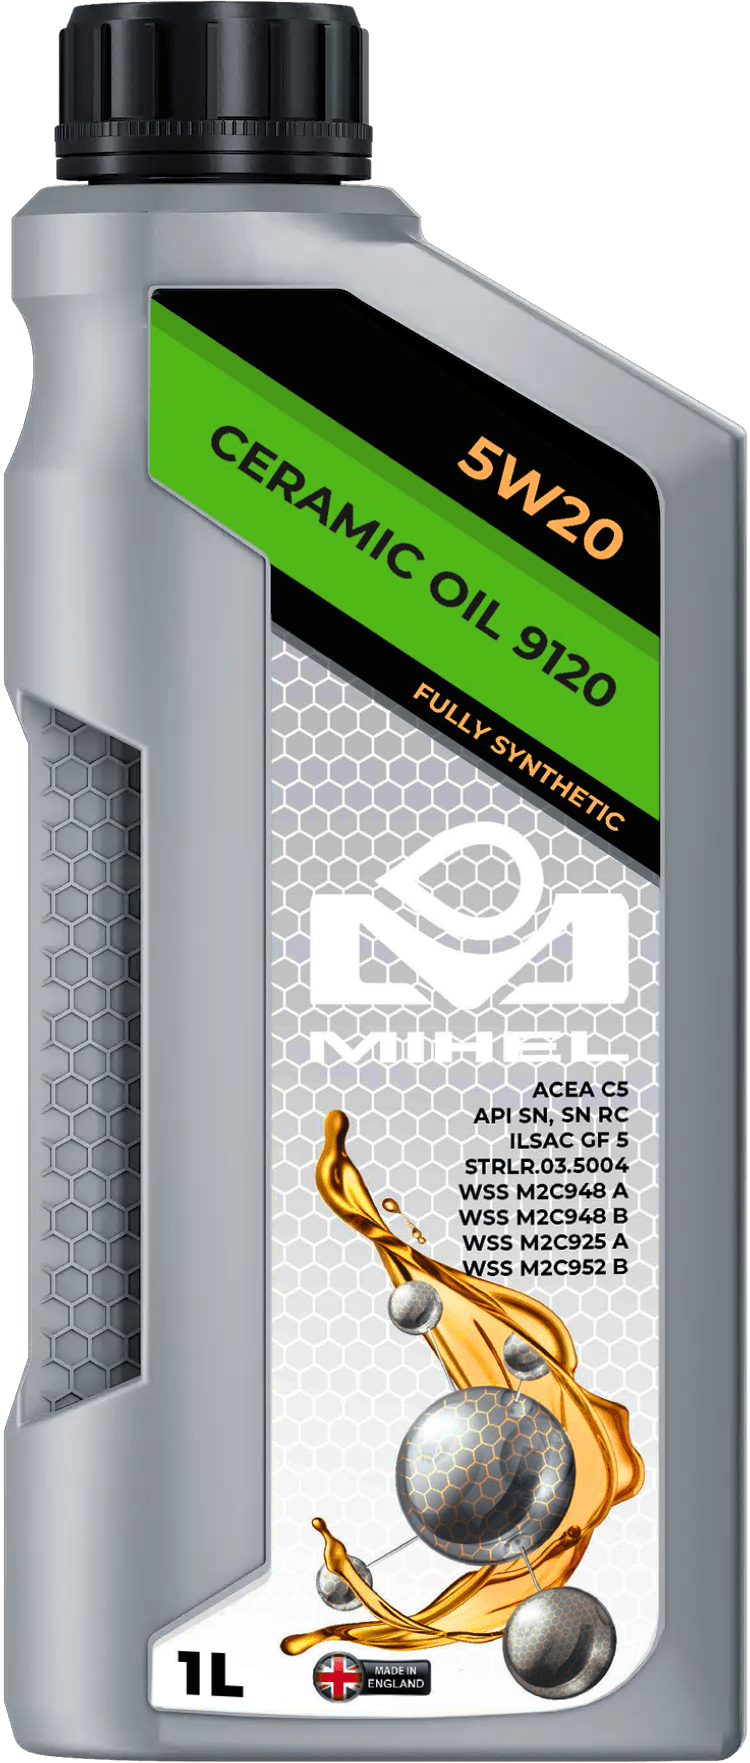 MIHEL Ceramic Oil® 9120 5W20